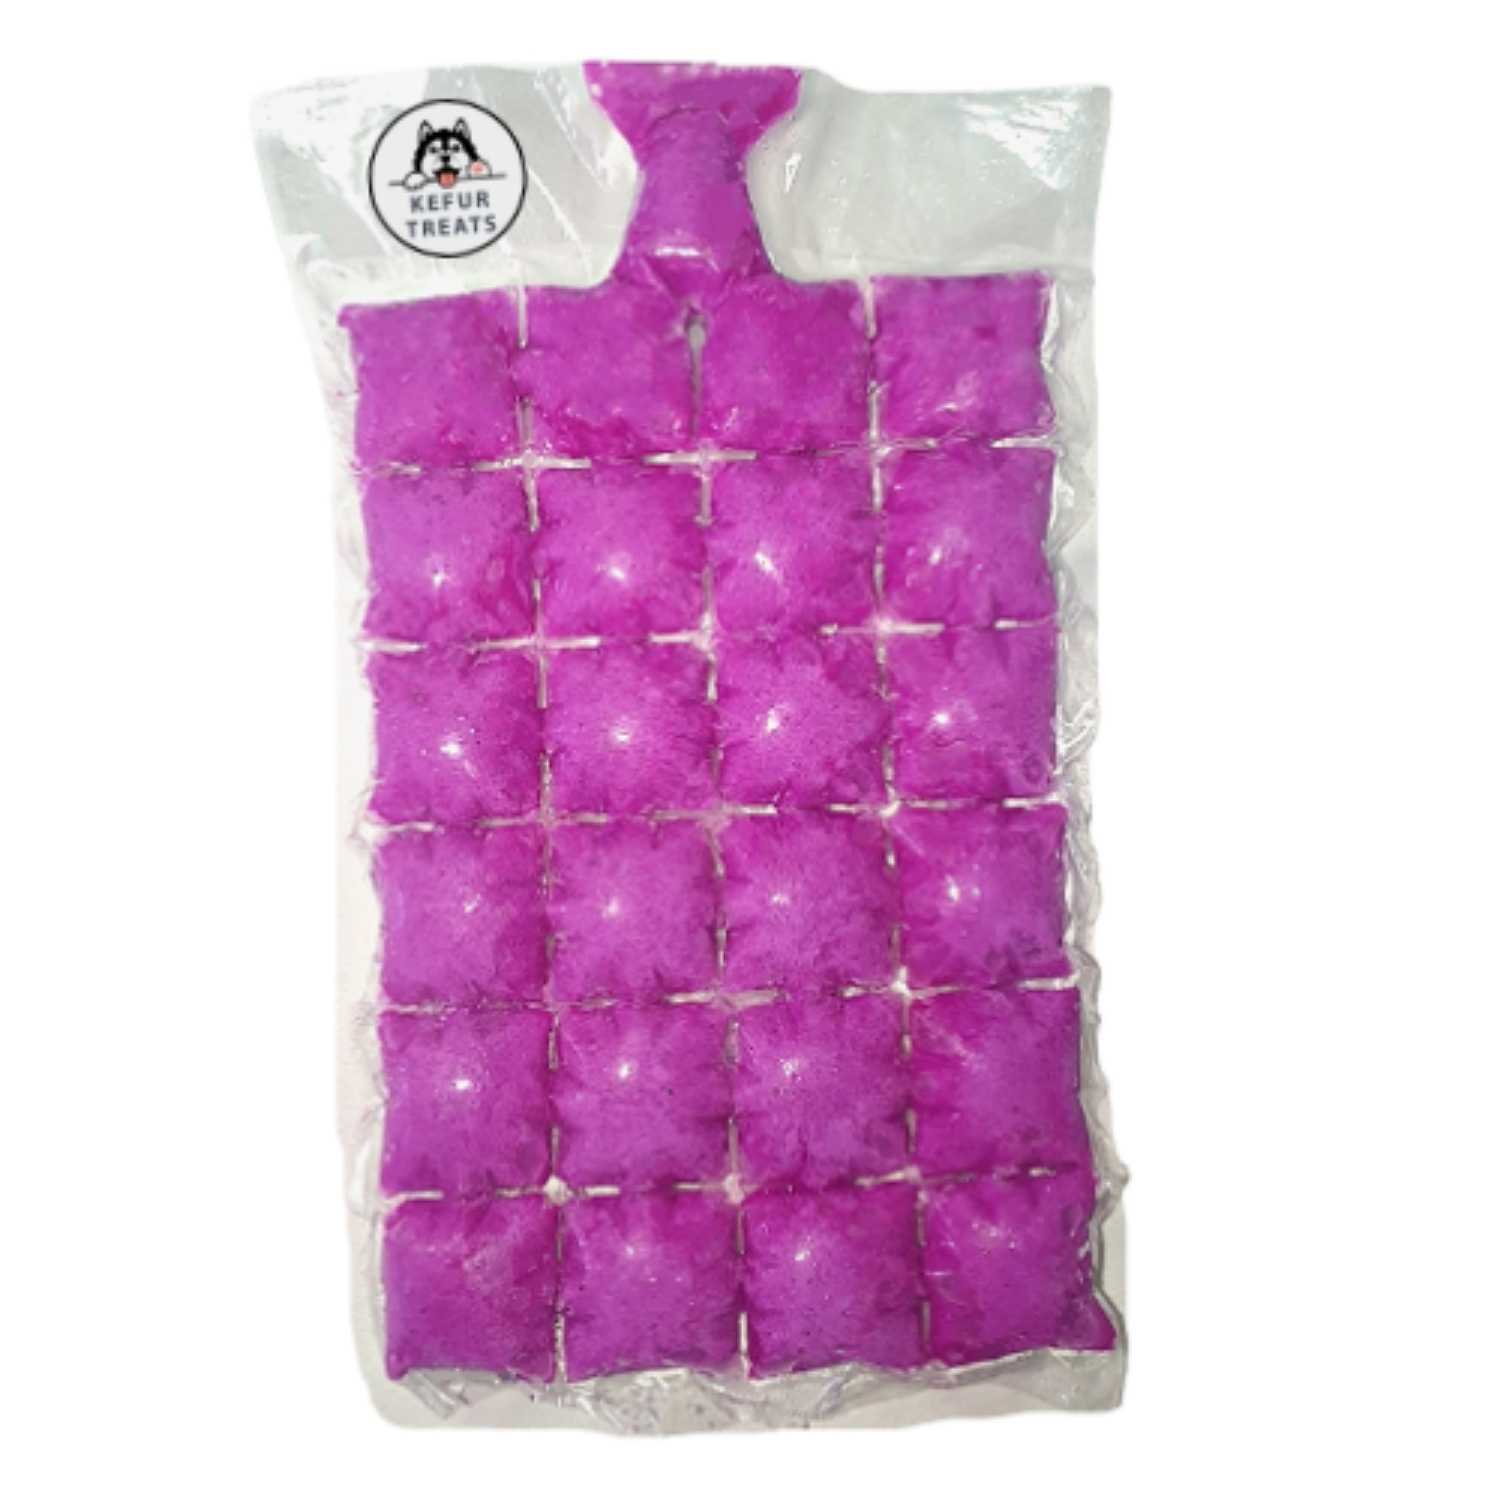 Kefur Treats Dragonfruit Milk Kefir Frozen Pack (24 Cubes)